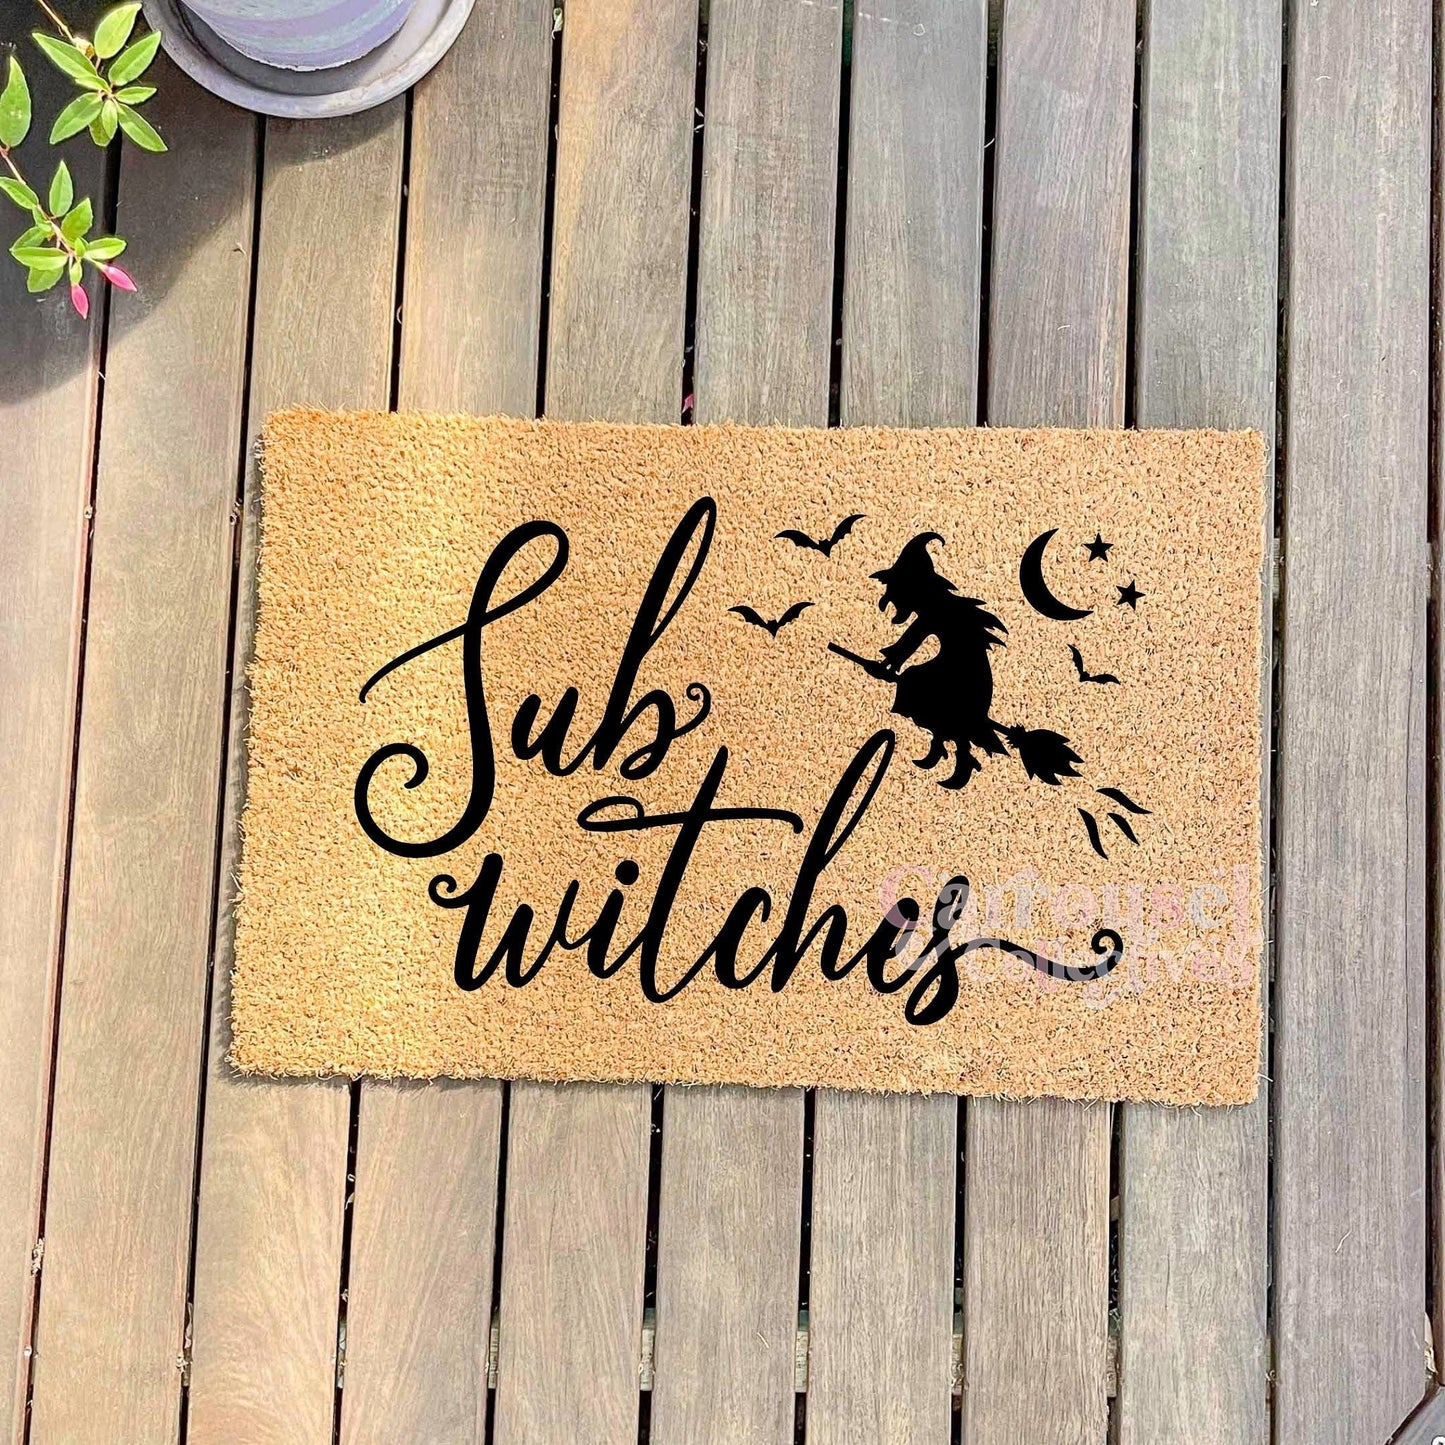 Sup Witches doormat, Halloween Doormat, Spooky Doormat, Creepy Doormat